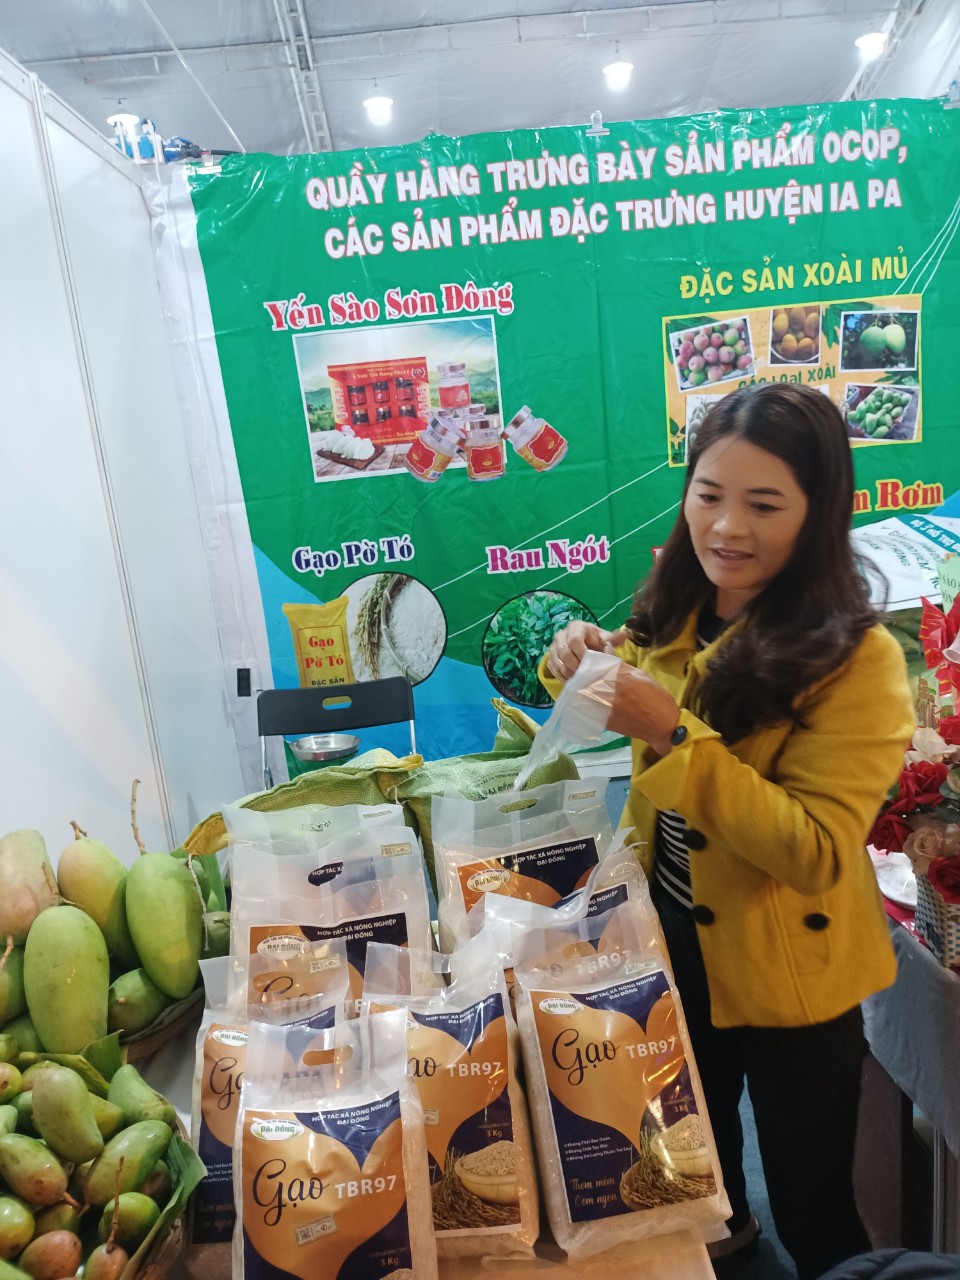 Vì sao gạo TBR97 lại được chọn để xây dựng thương hiệu gạo Ia Pa, sản phẩm OCOP của tỉnh Gia Lai - Ảnh 2.